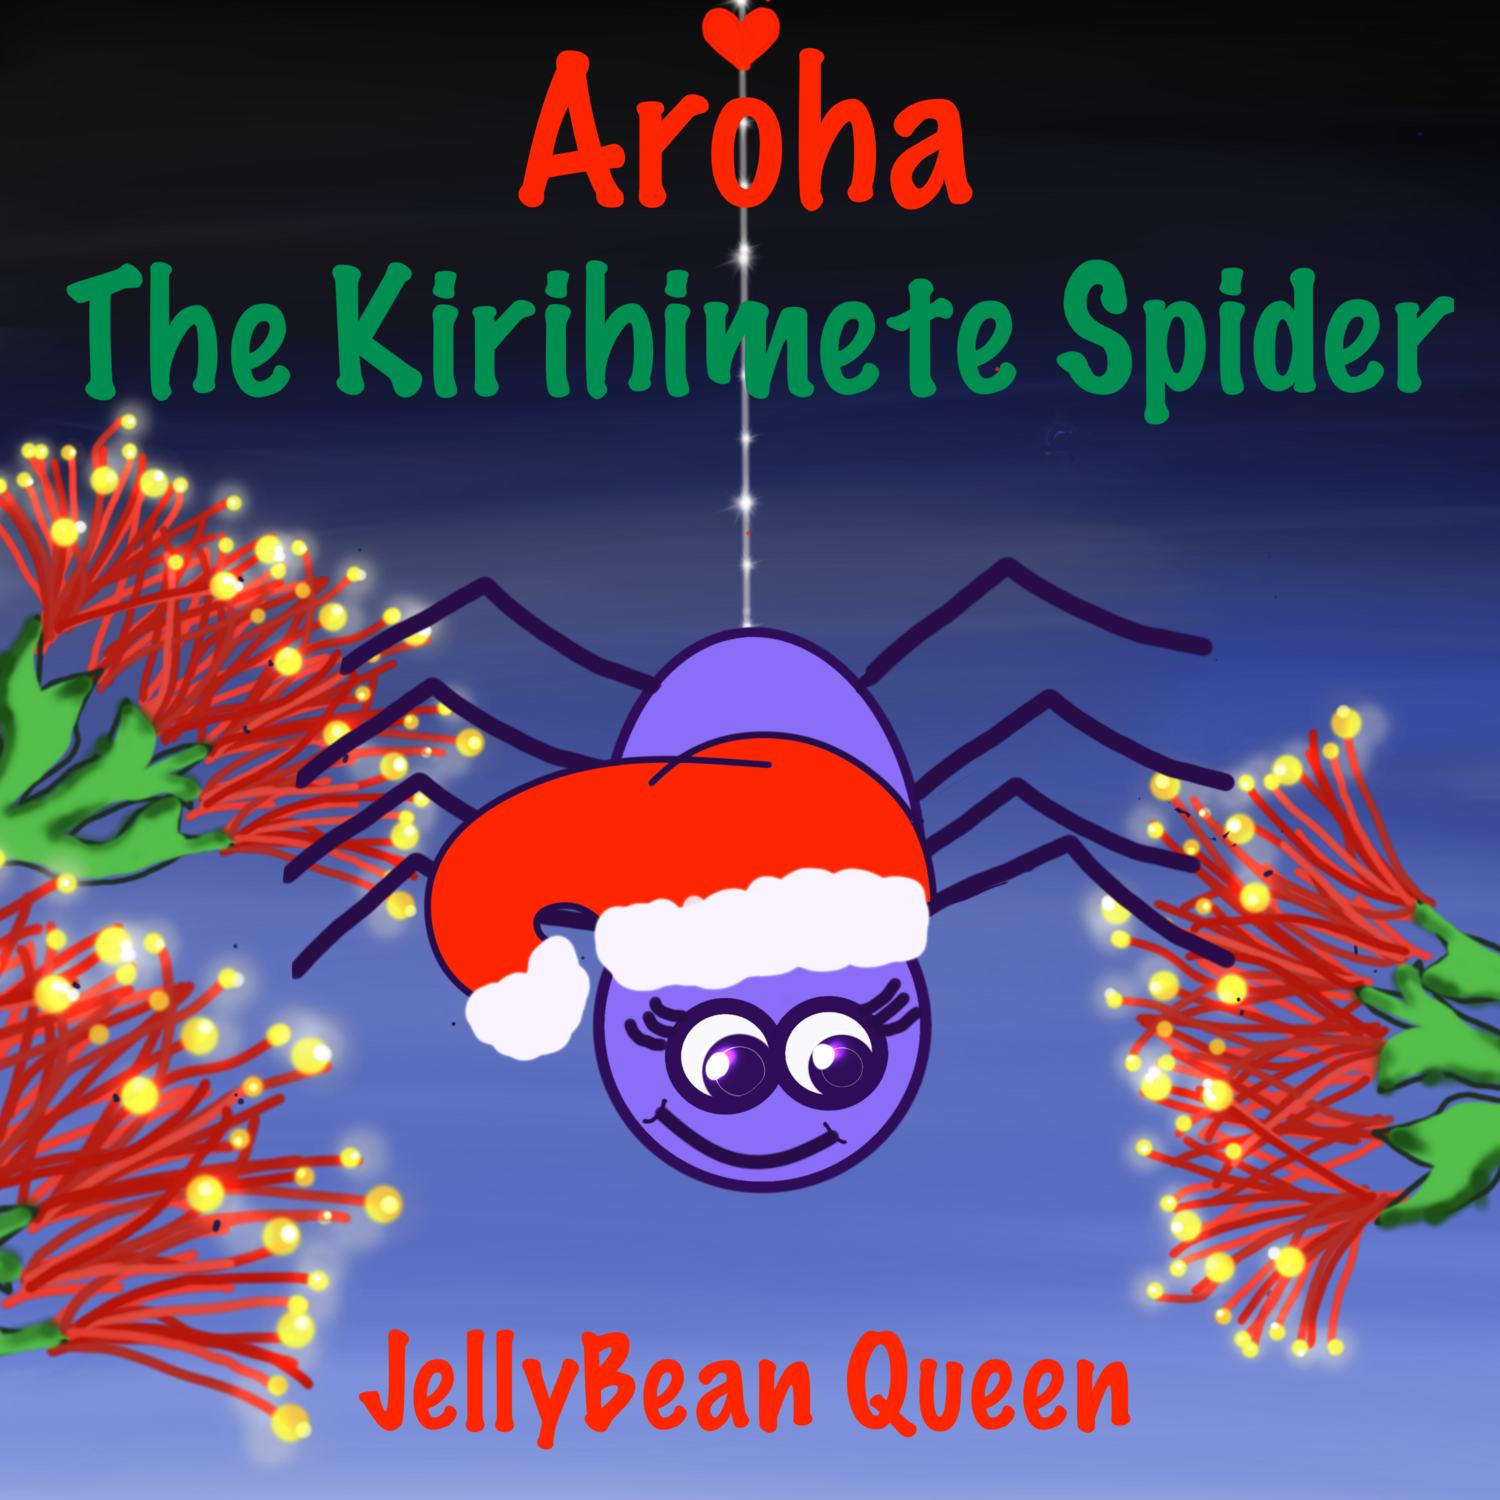 Aroha the Kirihimete Spider: Digital Song Kit